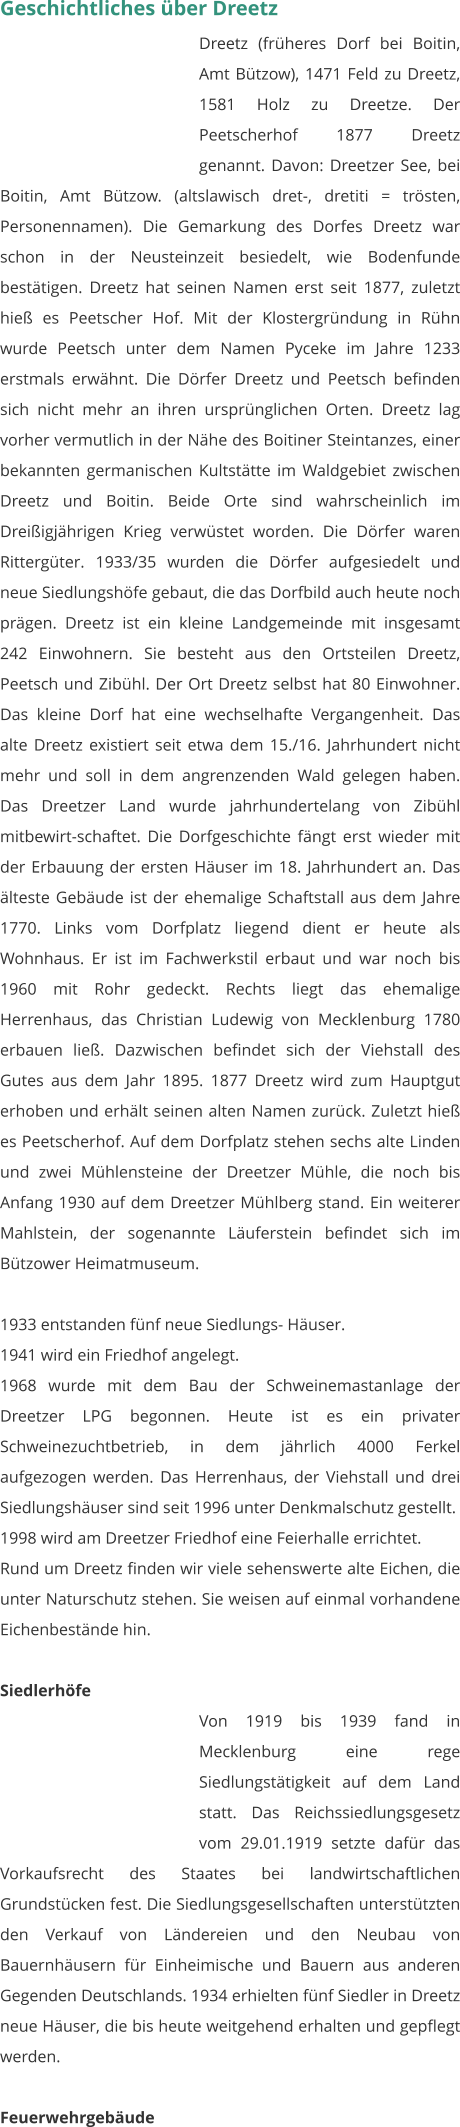 Geschichtliches über Dreetz Dreetz (früheres Dorf bei Boitin, Amt Bützow), 1471 Feld zu Dreetz, 1581 Holz zu Dreetze. Der Peetscherhof 1877 Dreetz genannt. Davon: Dreetzer See, bei Boitin, Amt Bützow. (altslawisch dret-, dretiti = trösten, Personennamen). Die Gemarkung des Dorfes Dreetz war schon in der Neusteinzeit besiedelt, wie Bodenfunde bestätigen. Dreetz hat seinen Namen erst seit 1877, zuletzt hieß es Peetscher Hof. Mit der Klostergründung in Rühn wurde Peetsch unter dem Namen Pyceke im Jahre 1233 erstmals erwähnt. Die Dörfer Dreetz und Peetsch befinden sich nicht mehr an ihren ursprünglichen Orten. Dreetz lag vorher vermutlich in der Nähe des Boitiner Steintanzes, einer bekannten germanischen Kultstätte im Waldgebiet zwischen Dreetz und Boitin. Beide Orte sind wahrscheinlich im Dreißigjährigen Krieg verwüstet worden. Die Dörfer waren Rittergüter. 1933/35 wurden die Dörfer aufgesiedelt und neue Siedlungshöfe gebaut, die das Dorfbild auch heute noch prägen. Dreetz ist ein kleine Landgemeinde mit insgesamt 242 Einwohnern. Sie besteht aus den Ortsteilen Dreetz, Peetsch und Zibühl. Der Ort Dreetz selbst hat 80 Einwohner. Das kleine Dorf hat eine wechselhafte Vergangenheit. Das alte Dreetz existiert seit etwa dem 15./16. Jahrhundert nicht mehr und soll in dem angrenzenden Wald gelegen haben. Das Dreetzer Land wurde jahrhundertelang von Zibühl mitbewirt-schaftet. Die Dorfgeschichte fängt erst wieder mit der Erbauung der ersten Häuser im 18. Jahrhundert an. Das älteste Gebäude ist der ehemalige Schaftstall aus dem Jahre 1770. Links vom Dorfplatz liegend dient er heute als Wohnhaus. Er ist im Fachwerkstil erbaut und war noch bis 1960 mit Rohr gedeckt. Rechts liegt das ehemalige Herrenhaus, das Christian Ludewig von Mecklenburg 1780 erbauen ließ. Dazwischen befindet sich der Viehstall des Gutes aus dem Jahr 1895. 1877 Dreetz wird zum Hauptgut erhoben und erhält seinen alten Namen zurück. Zuletzt hieß es Peetscherhof. Auf dem Dorfplatz stehen sechs alte Linden und zwei Mühlensteine der Dreetzer Mühle, die noch bis Anfang 1930 auf dem Dreetzer Mühlberg stand. Ein weiterer Mahlstein, der sogenannte Läuferstein befindet sich im Bützower Heimatmuseum.  1933 entstanden fünf neue Siedlungs- Häuser. 1941 wird ein Friedhof angelegt. 1968 wurde mit dem Bau der Schweinemastanlage der Dreetzer LPG begonnen. Heute ist es ein privater Schweinezuchtbetrieb, in dem jährlich 4000 Ferkel aufgezogen werden. Das Herrenhaus, der Viehstall und drei Siedlungshäuser sind seit 1996 unter Denkmalschutz gestellt. 1998 wird am Dreetzer Friedhof eine Feierhalle errichtet. Rund um Dreetz finden wir viele sehenswerte alte Eichen, die unter Naturschutz stehen. Sie weisen auf einmal vorhandene Eichenbestände hin.   Siedlerhöfe Von 1919 bis 1939 fand in Mecklenburg eine rege Siedlungstätigkeit auf dem Land statt. Das Reichssiedlungsgesetz vom 29.01.1919 setzte dafür das Vorkaufsrecht des Staates bei landwirtschaftlichen Grundstücken fest. Die Siedlungsgesellschaften unterstützten den Verkauf von Ländereien und den Neubau von Bauernhäusern für Einheimische und Bauern aus anderen Gegenden Deutschlands. 1934 erhielten fünf Siedler in Dreetz neue Häuser, die bis heute weitgehend erhalten und gepflegt werden.  Feuerwehrgebäude